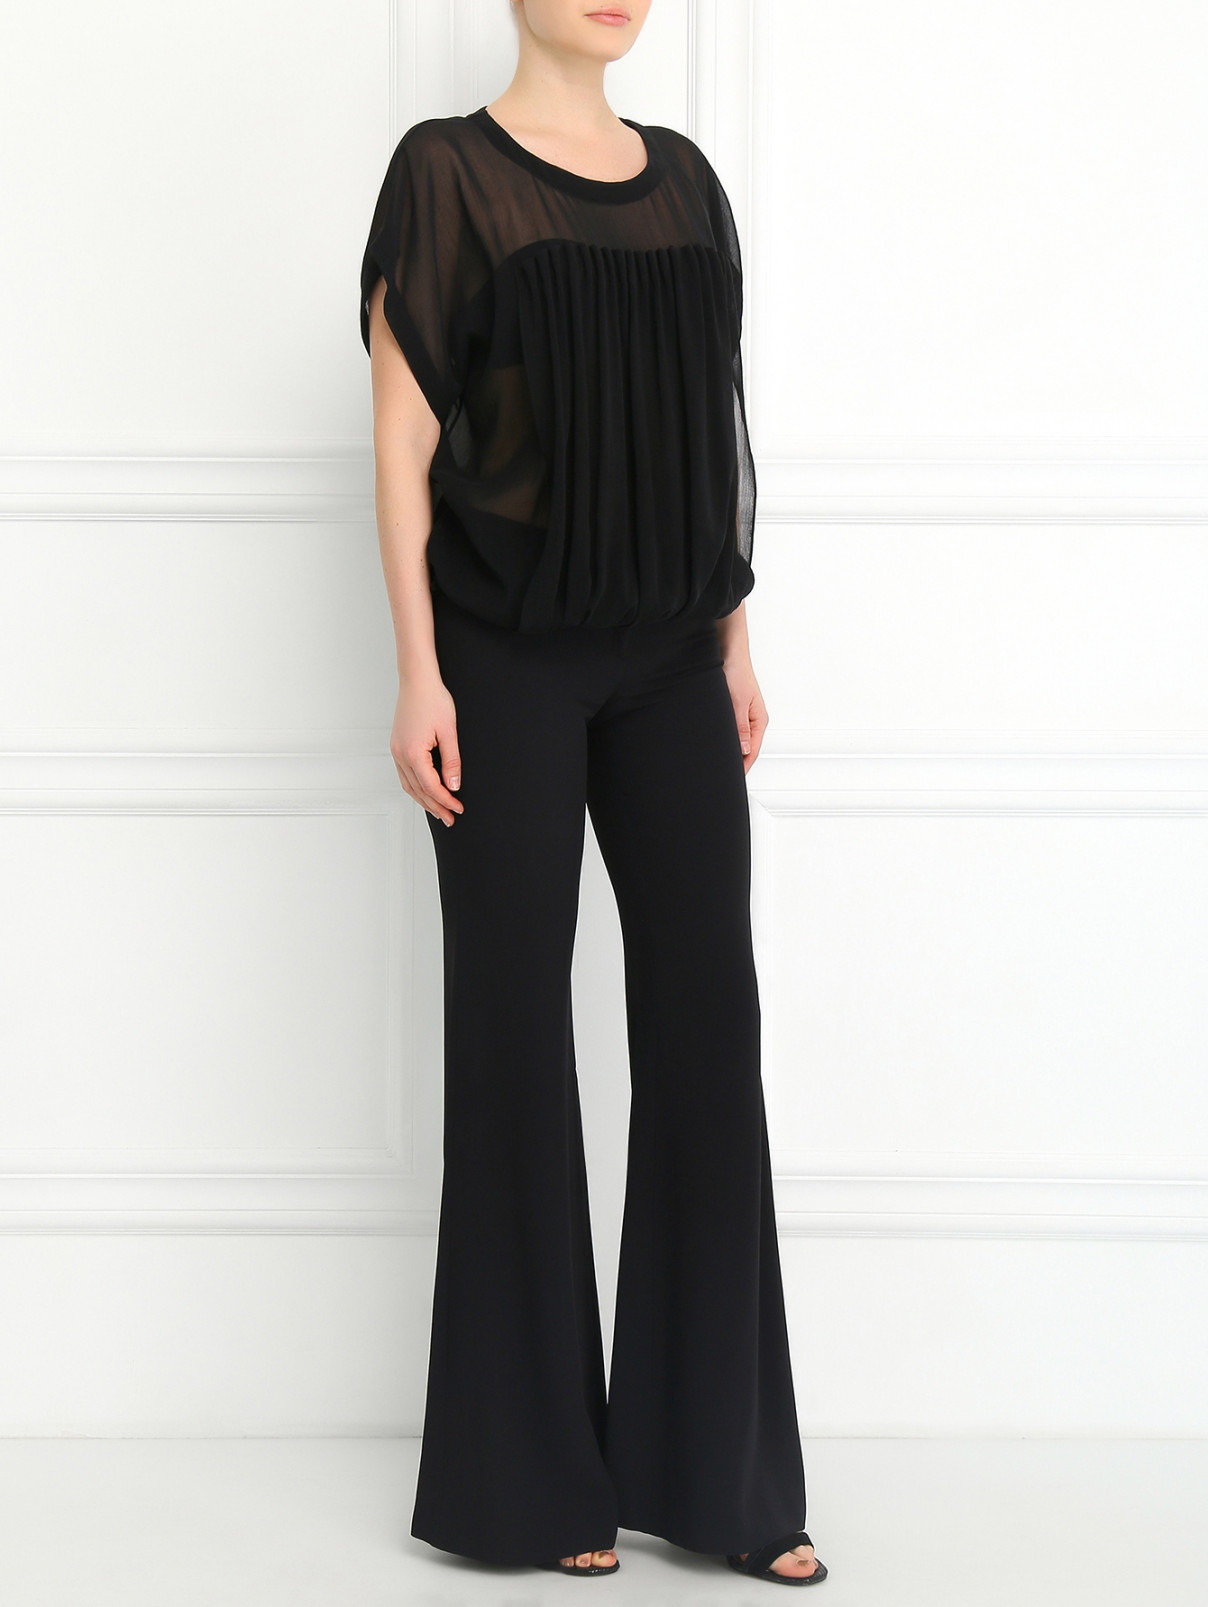 Блуза из хлопка и шелка Jean Paul Gaultier  –  Модель Общий вид  – Цвет:  Черный